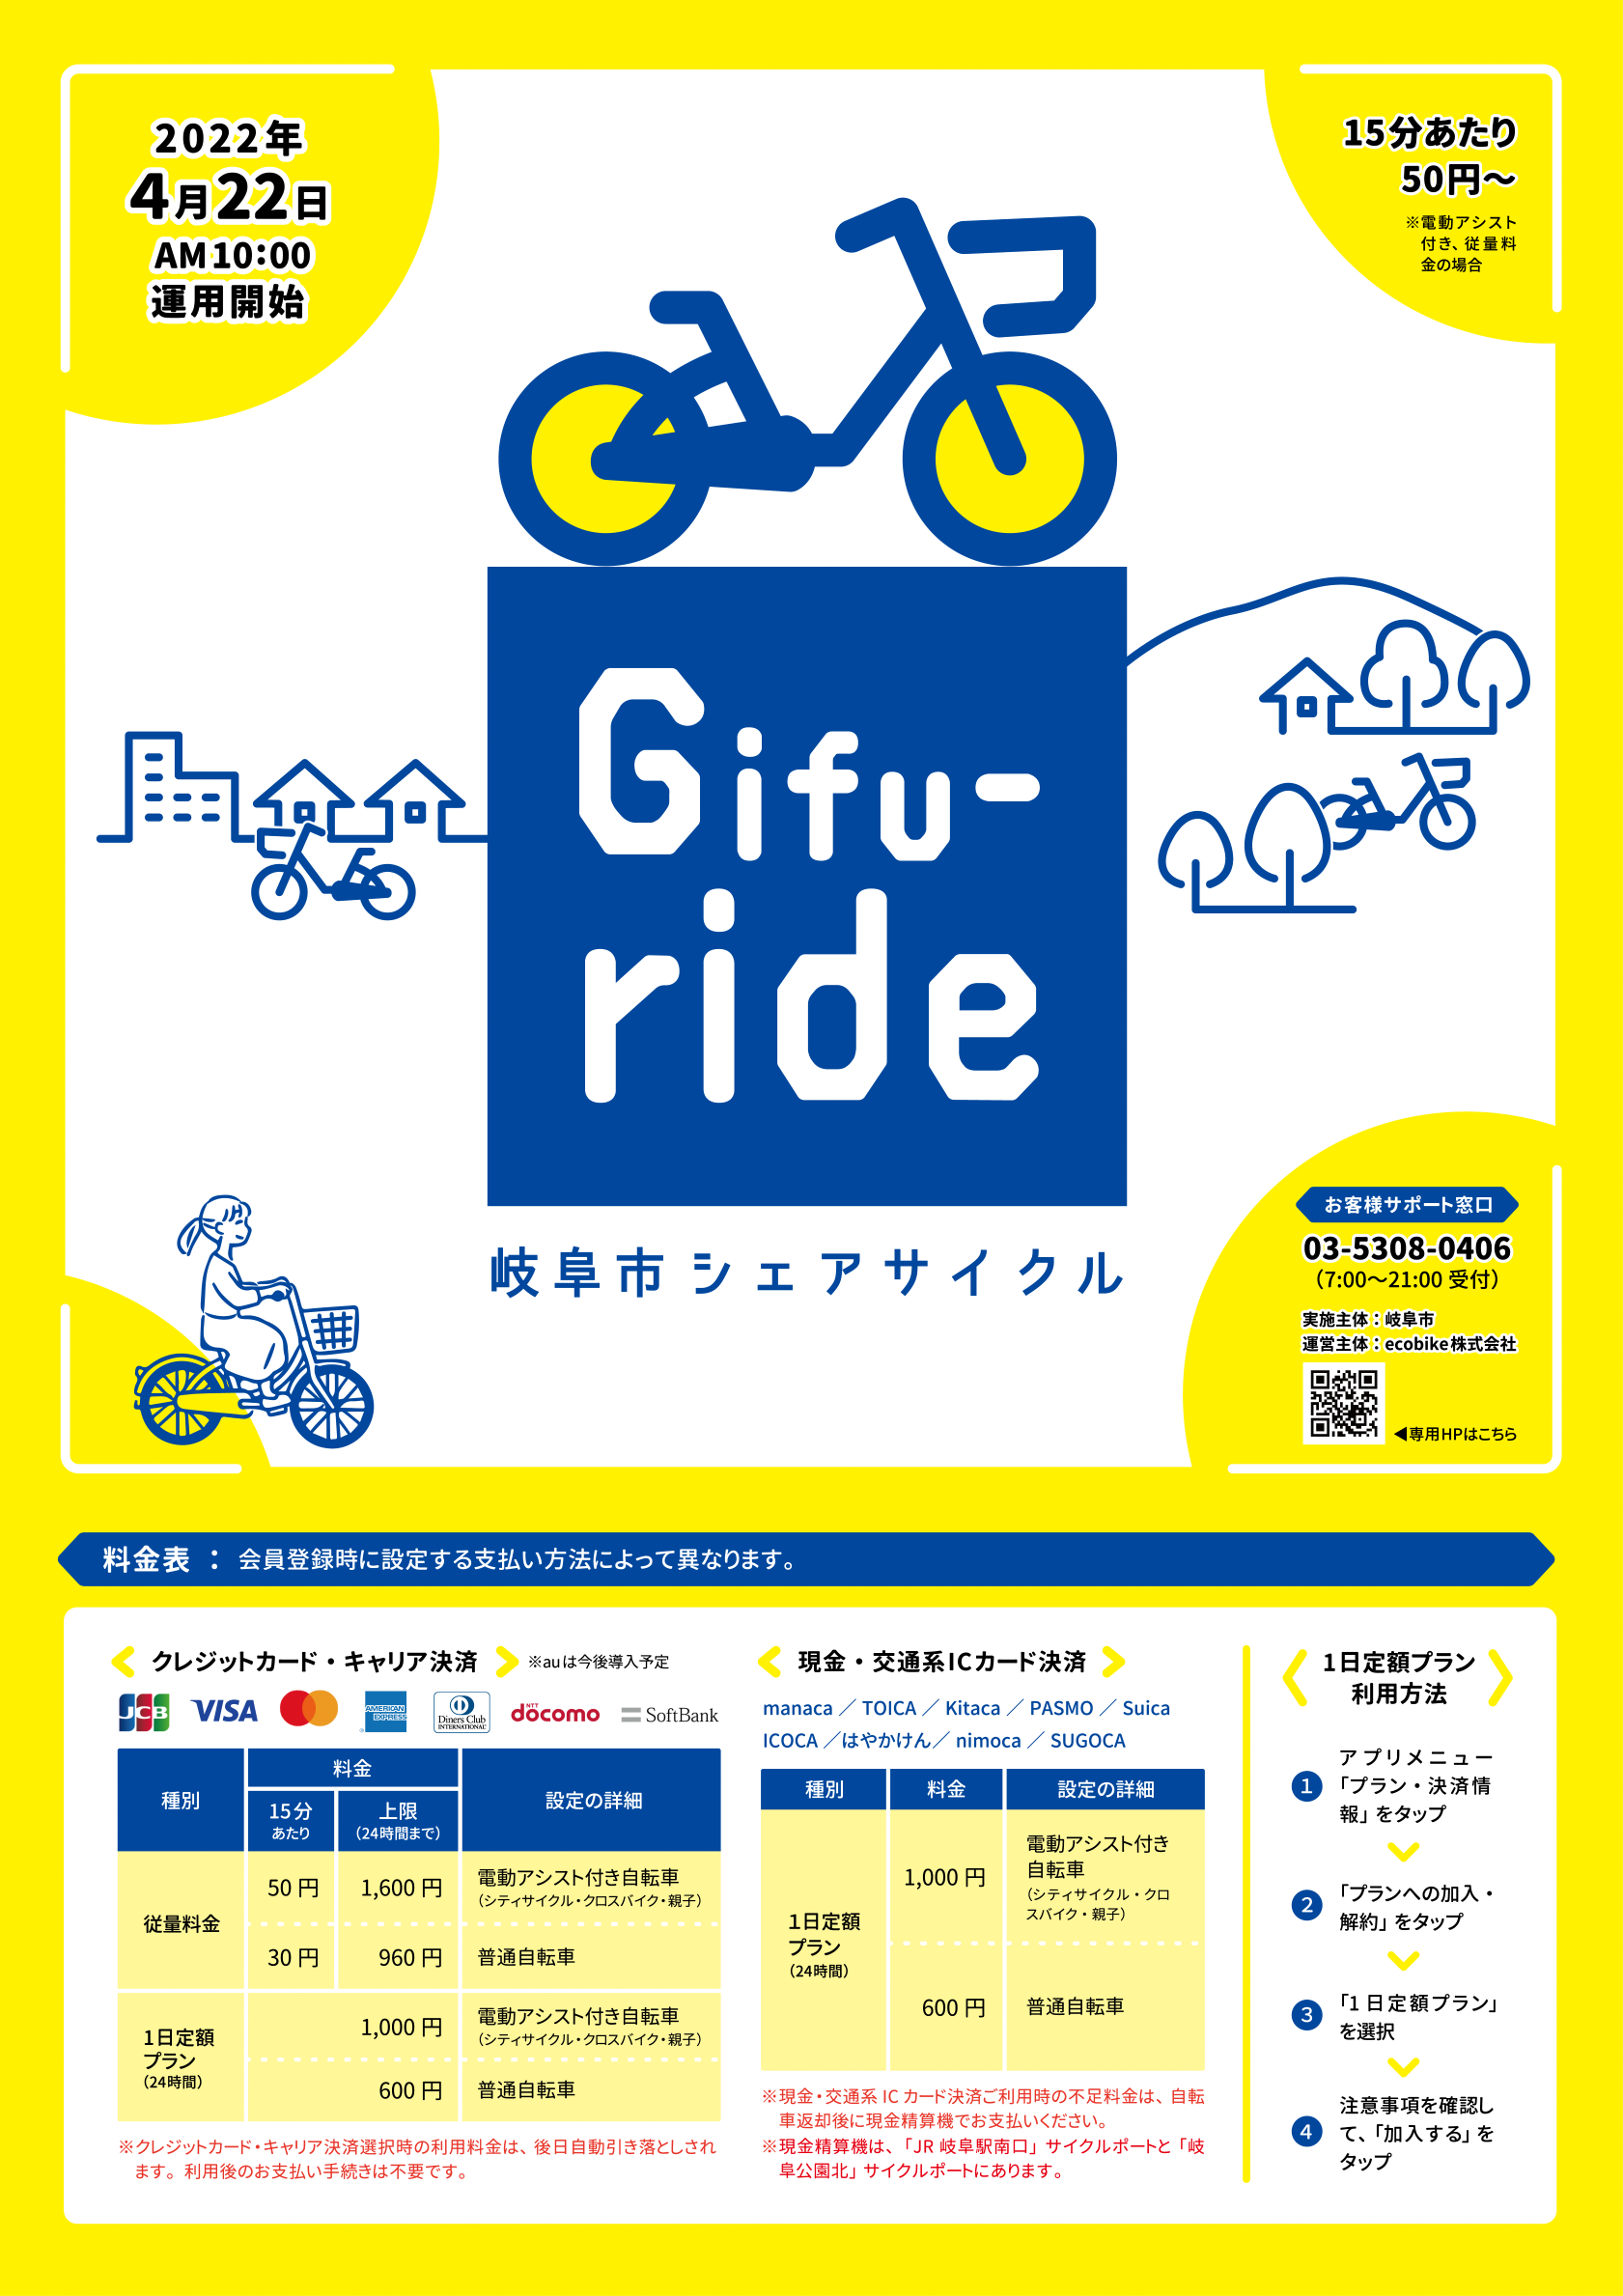 シェアサイクル Gifu Ride 岐阜観光コンベンション協会